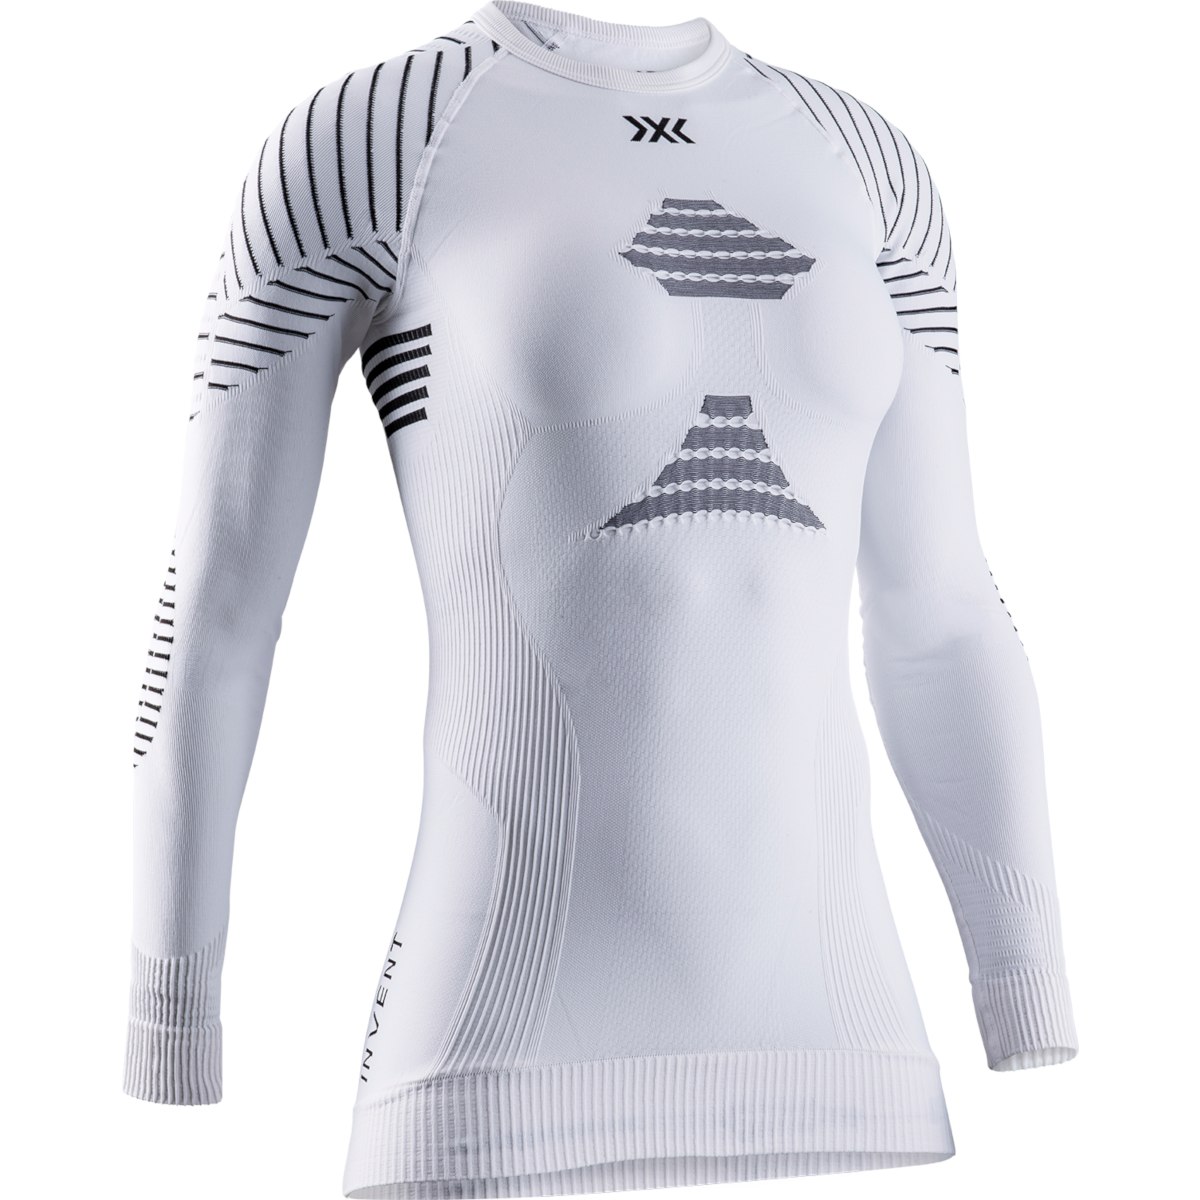 Produktbild von X-Bionic Invent 4.0 Langarm-Unterhemd für Damen - white/black